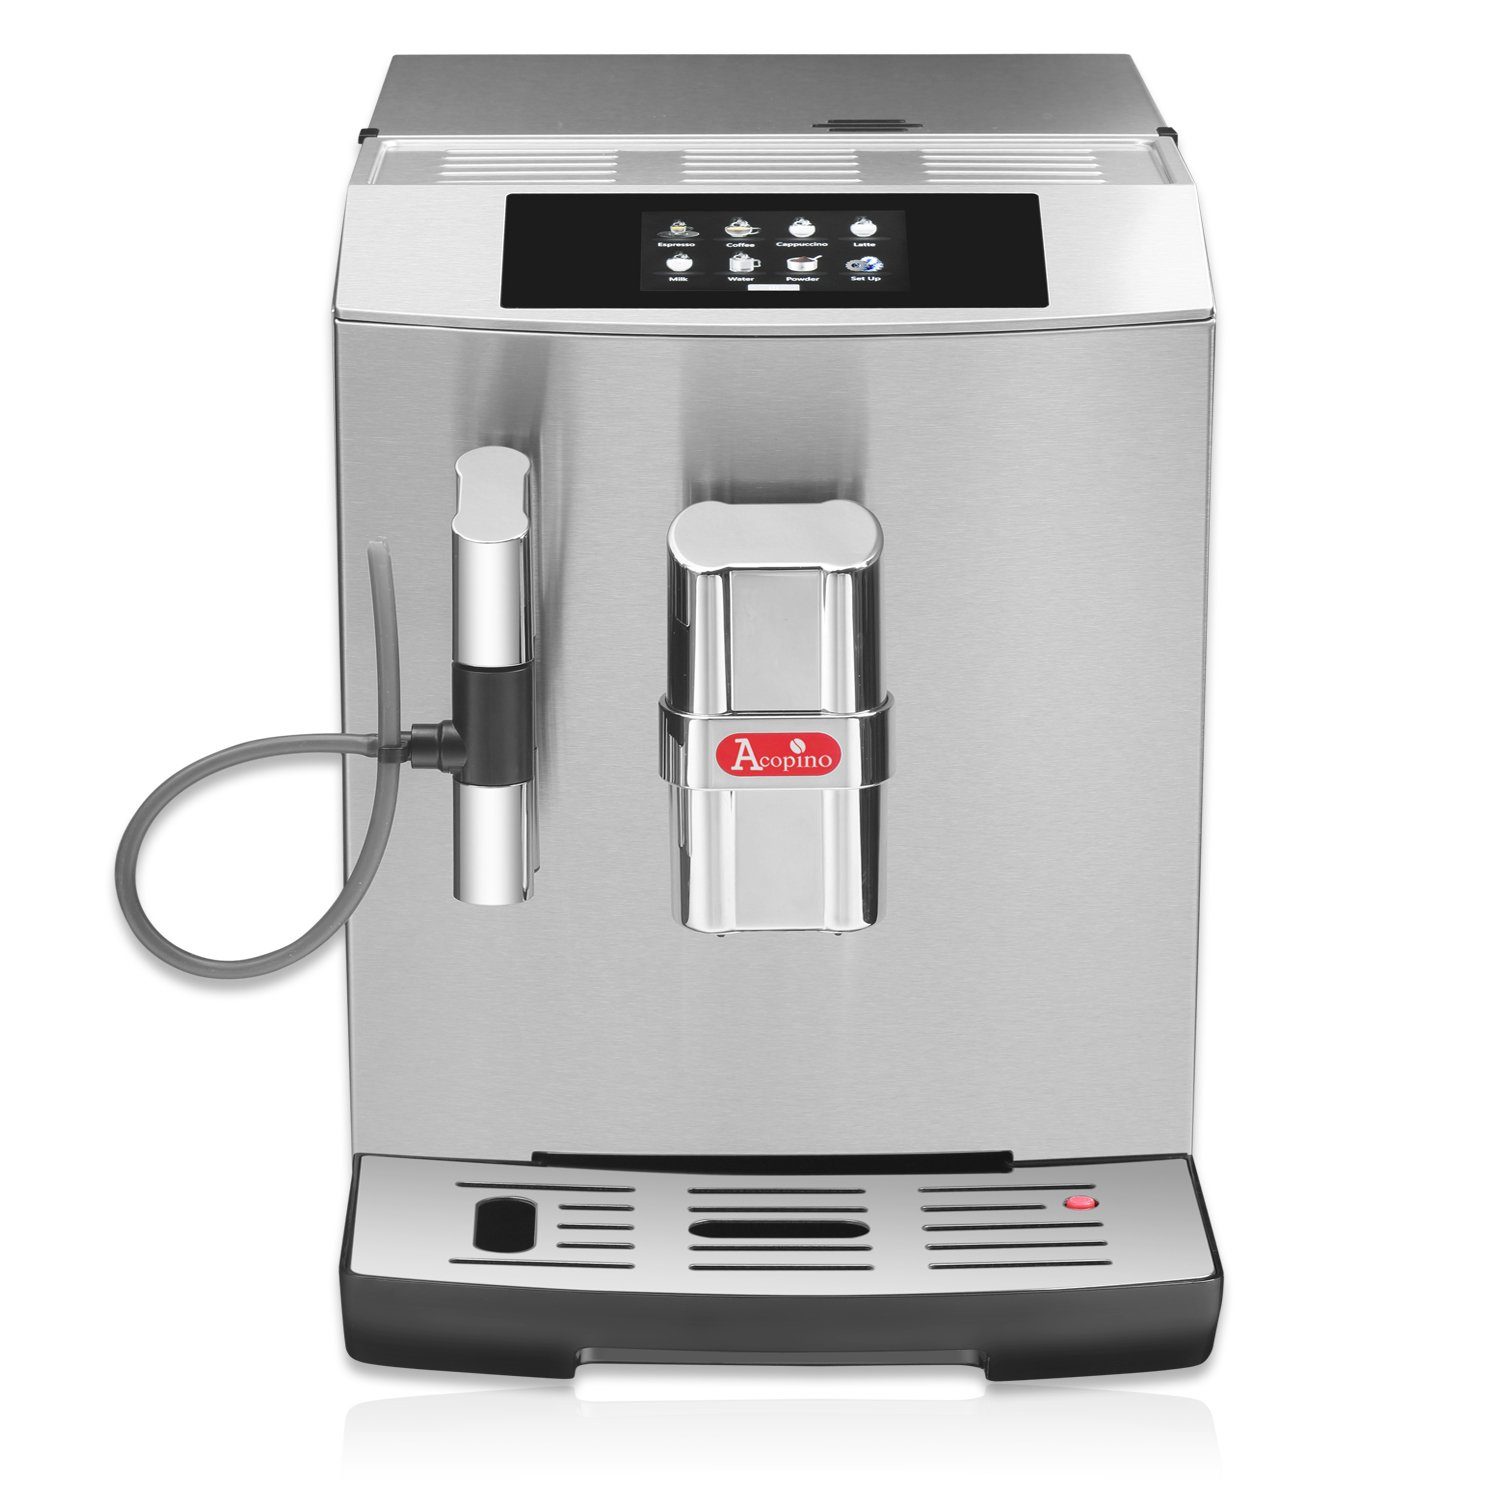 650ml inkl. Edition Acopino Fassungsvermögen Modena praktischem Thermo-Milchbehälter Kaffeevollautomat mit Inklusive Limited Edelstahl-Milchbehälter,